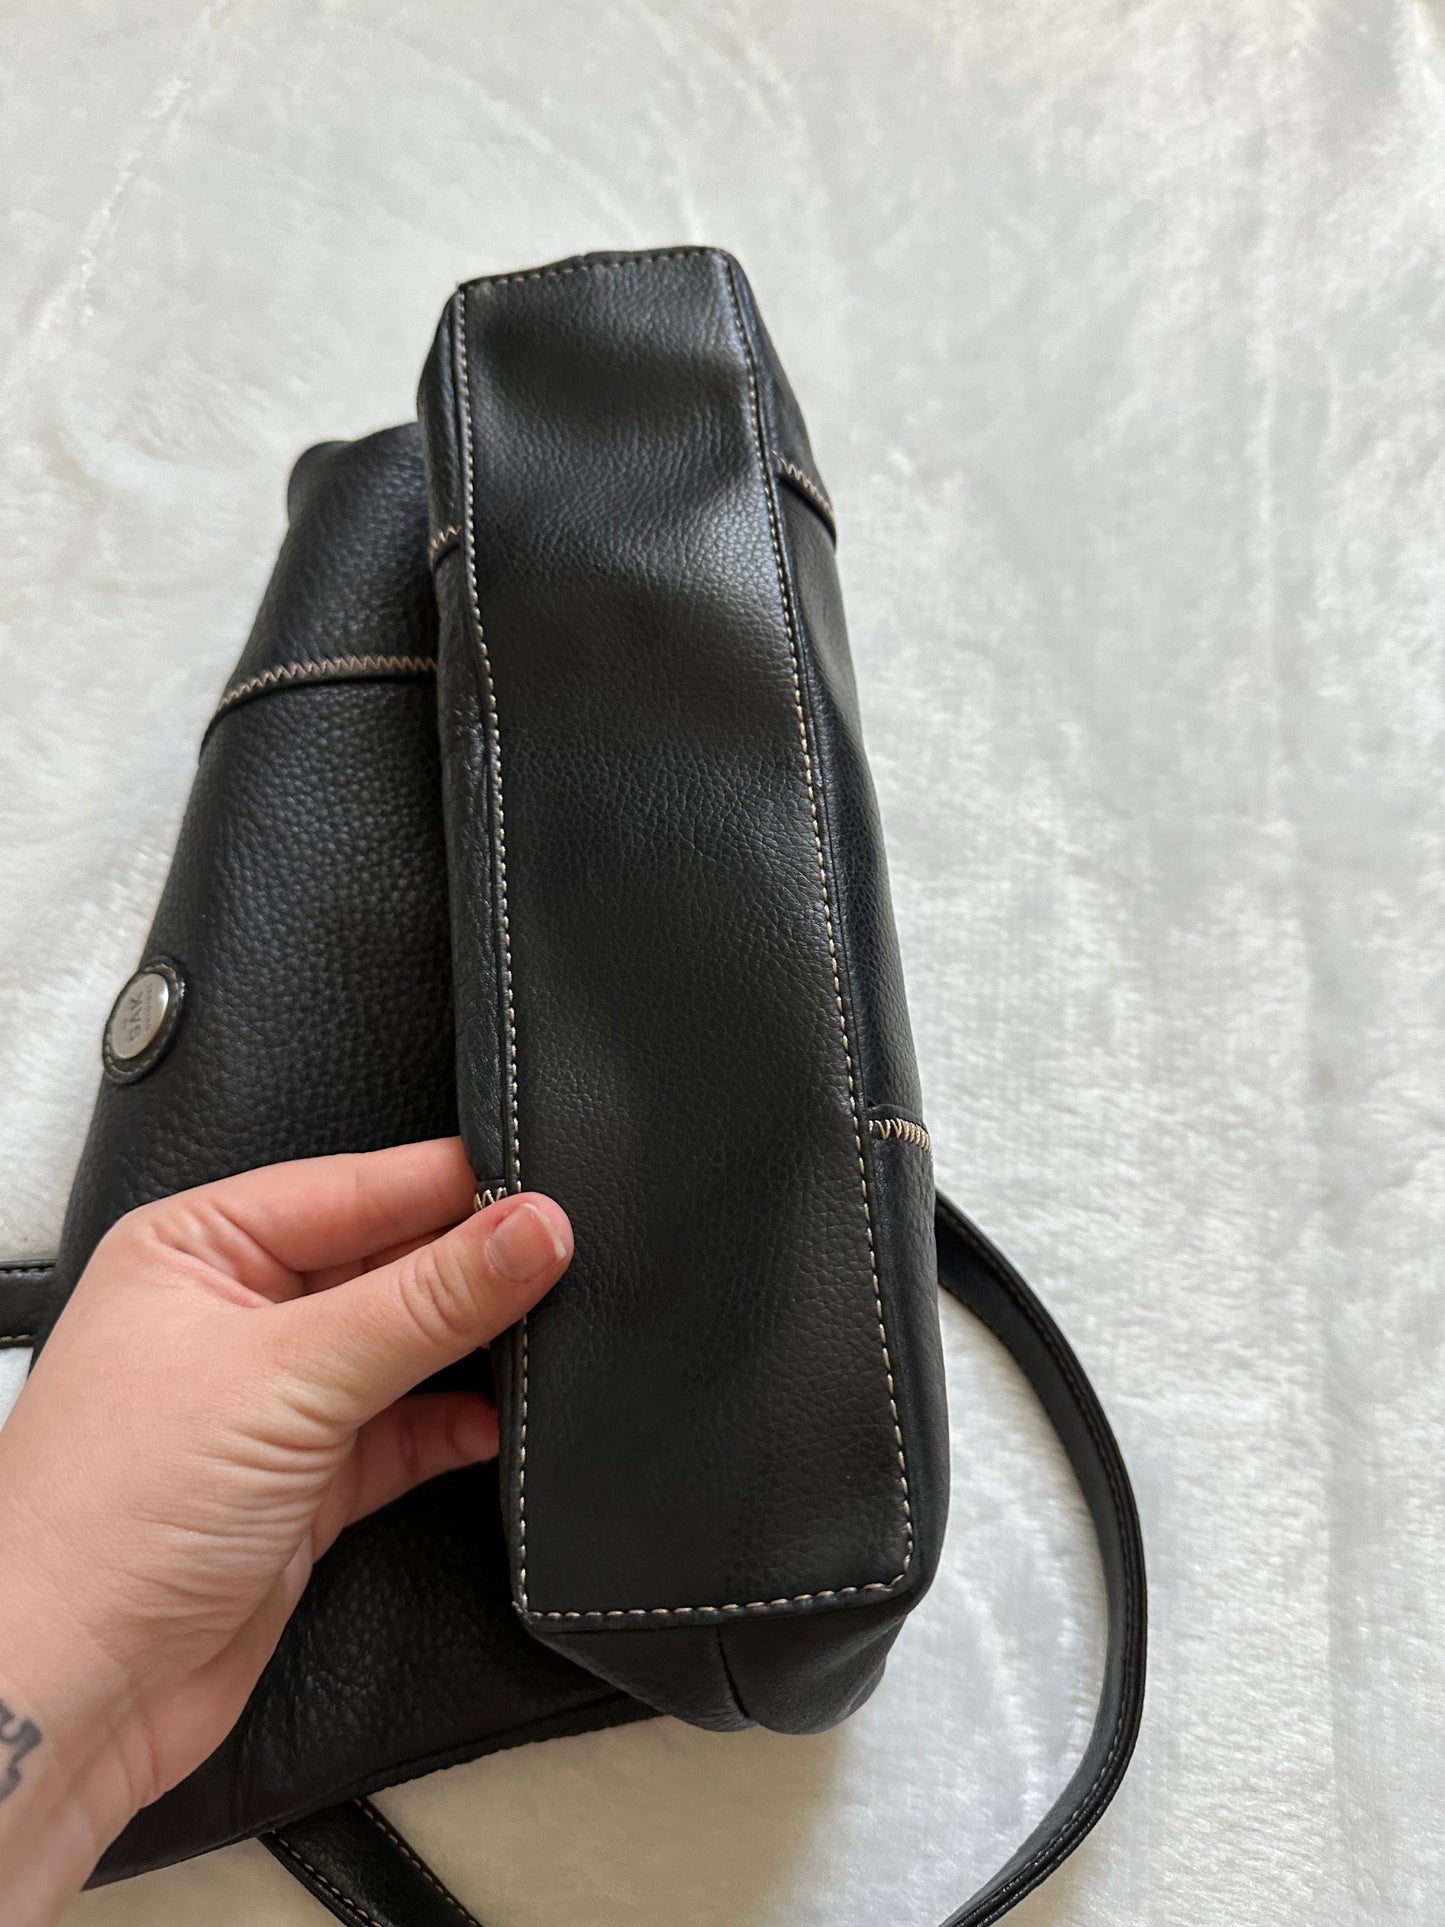 The Sak Original Black Leather Shoulder Bag